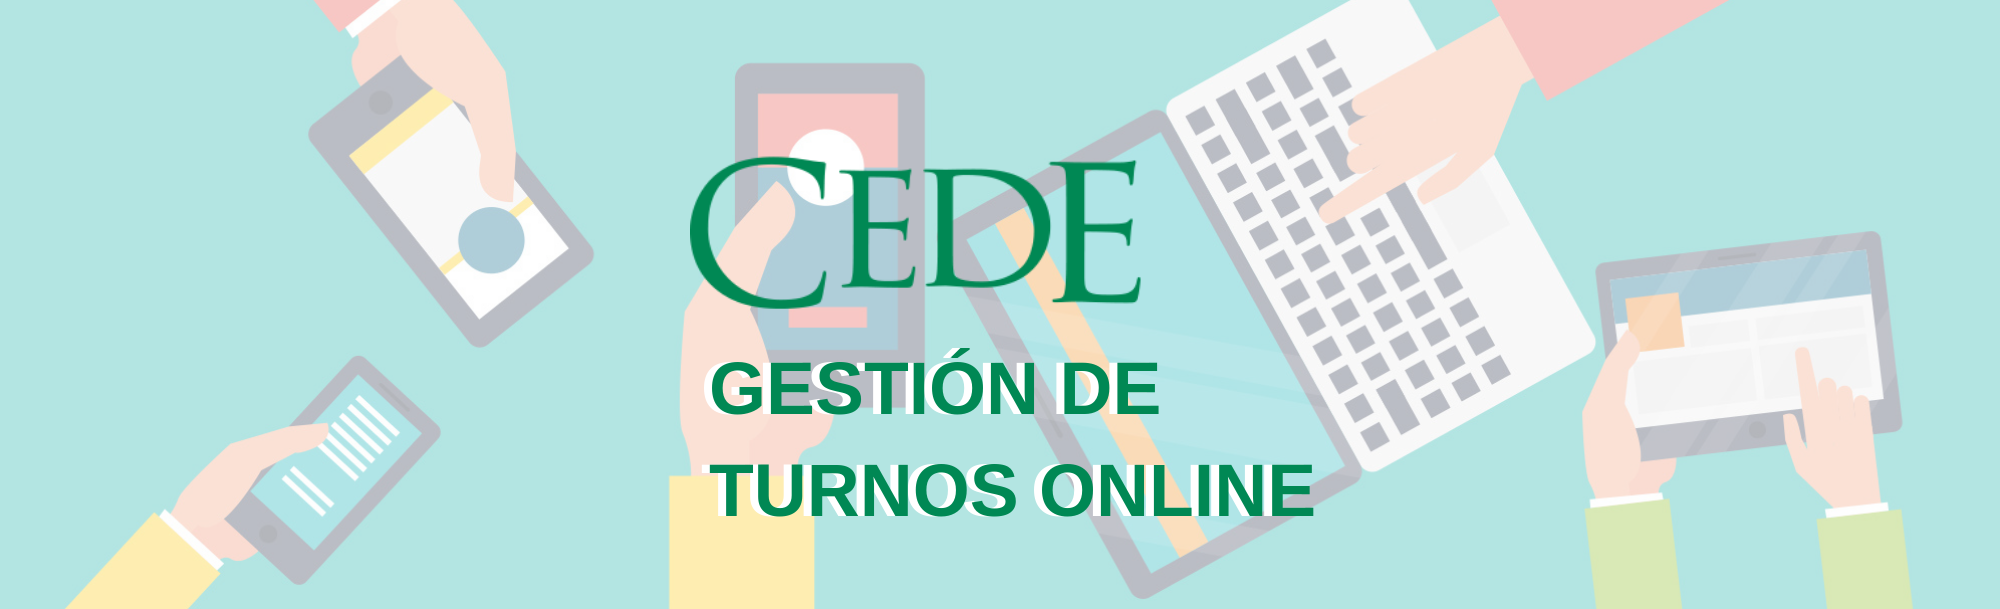 CEDE | Gestión de turnos online